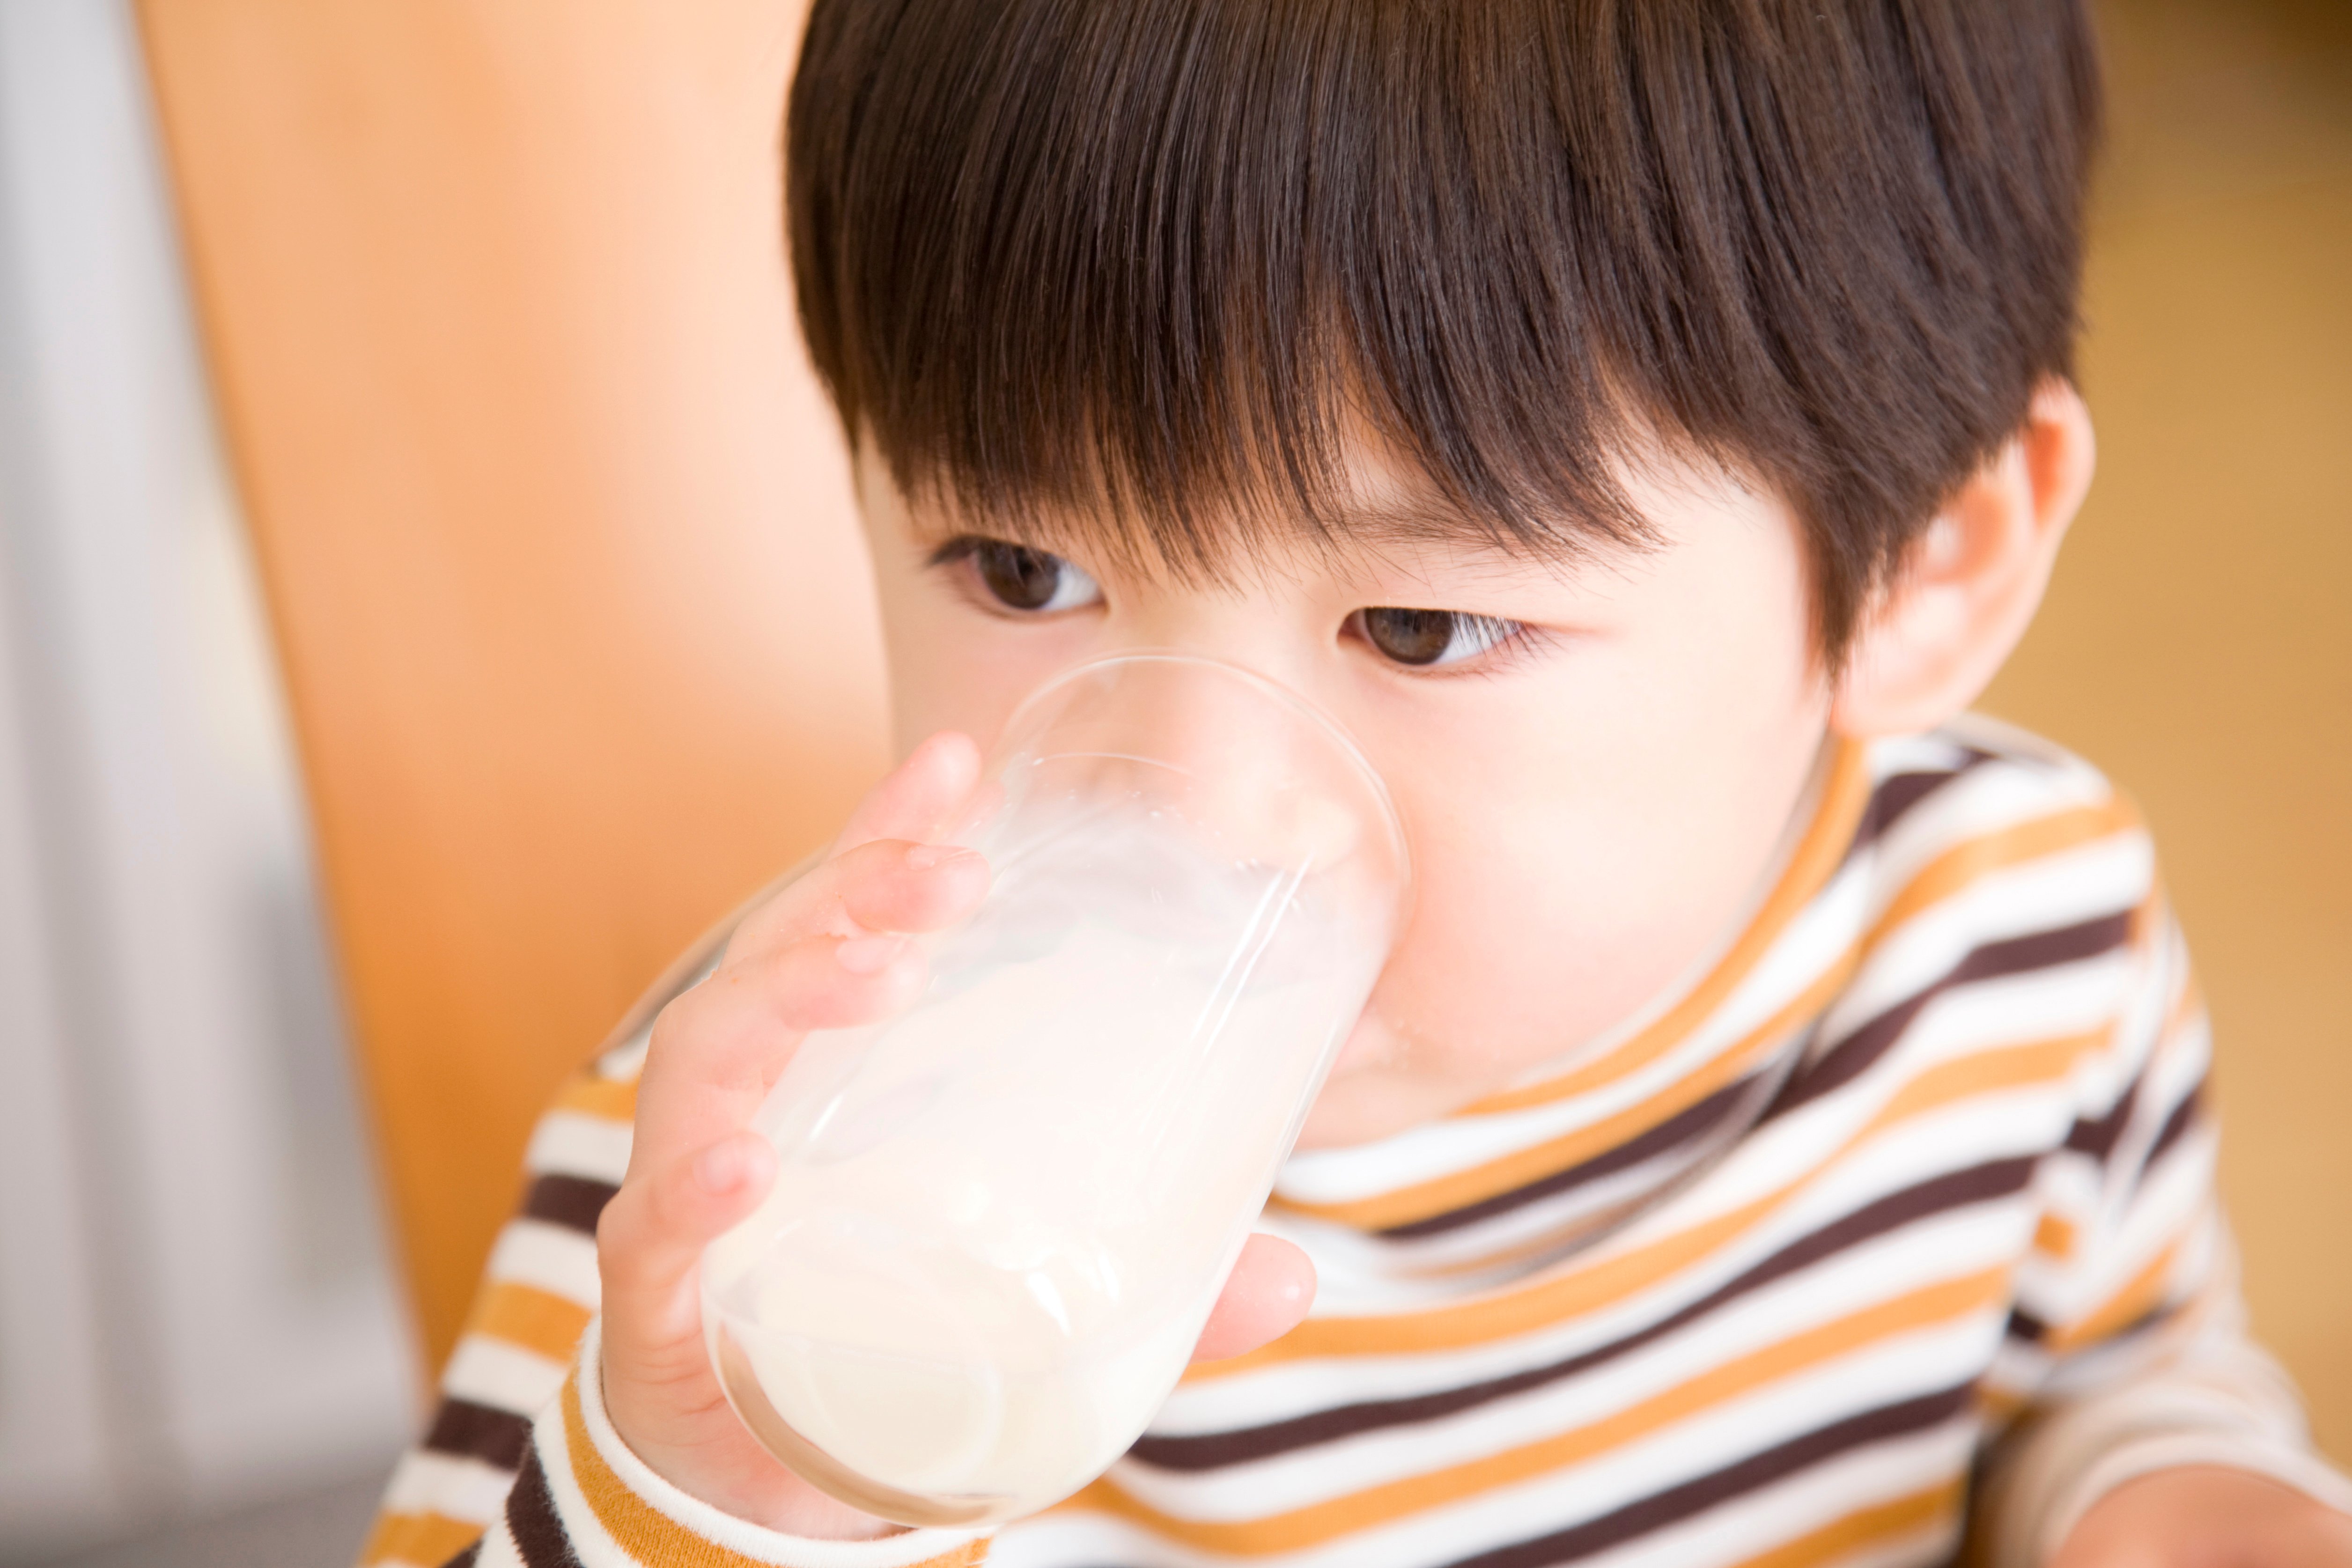 ไทยดื่มนมต่ำกว่าทั่วโลก 6 เท่า thaihealth